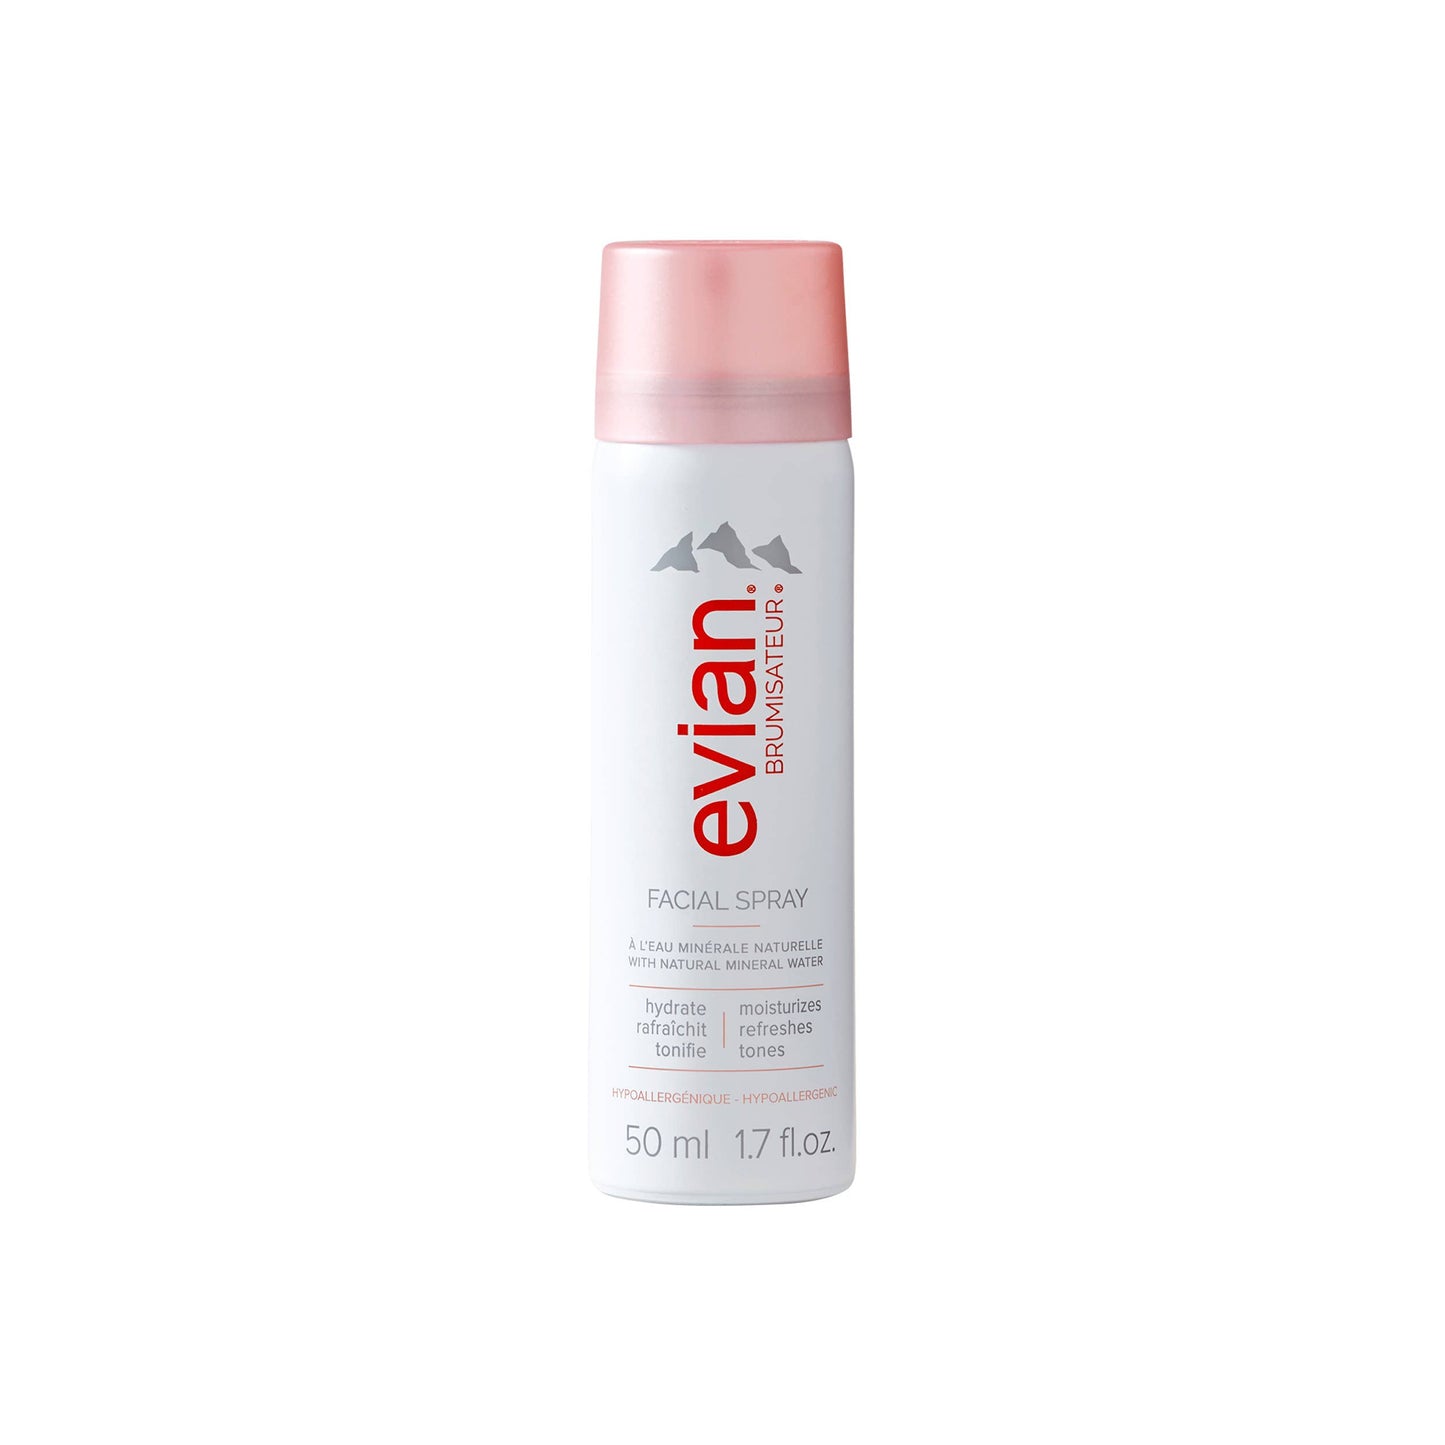 Evian Facial Spray - Evian Facial Spray, 1.7 oz